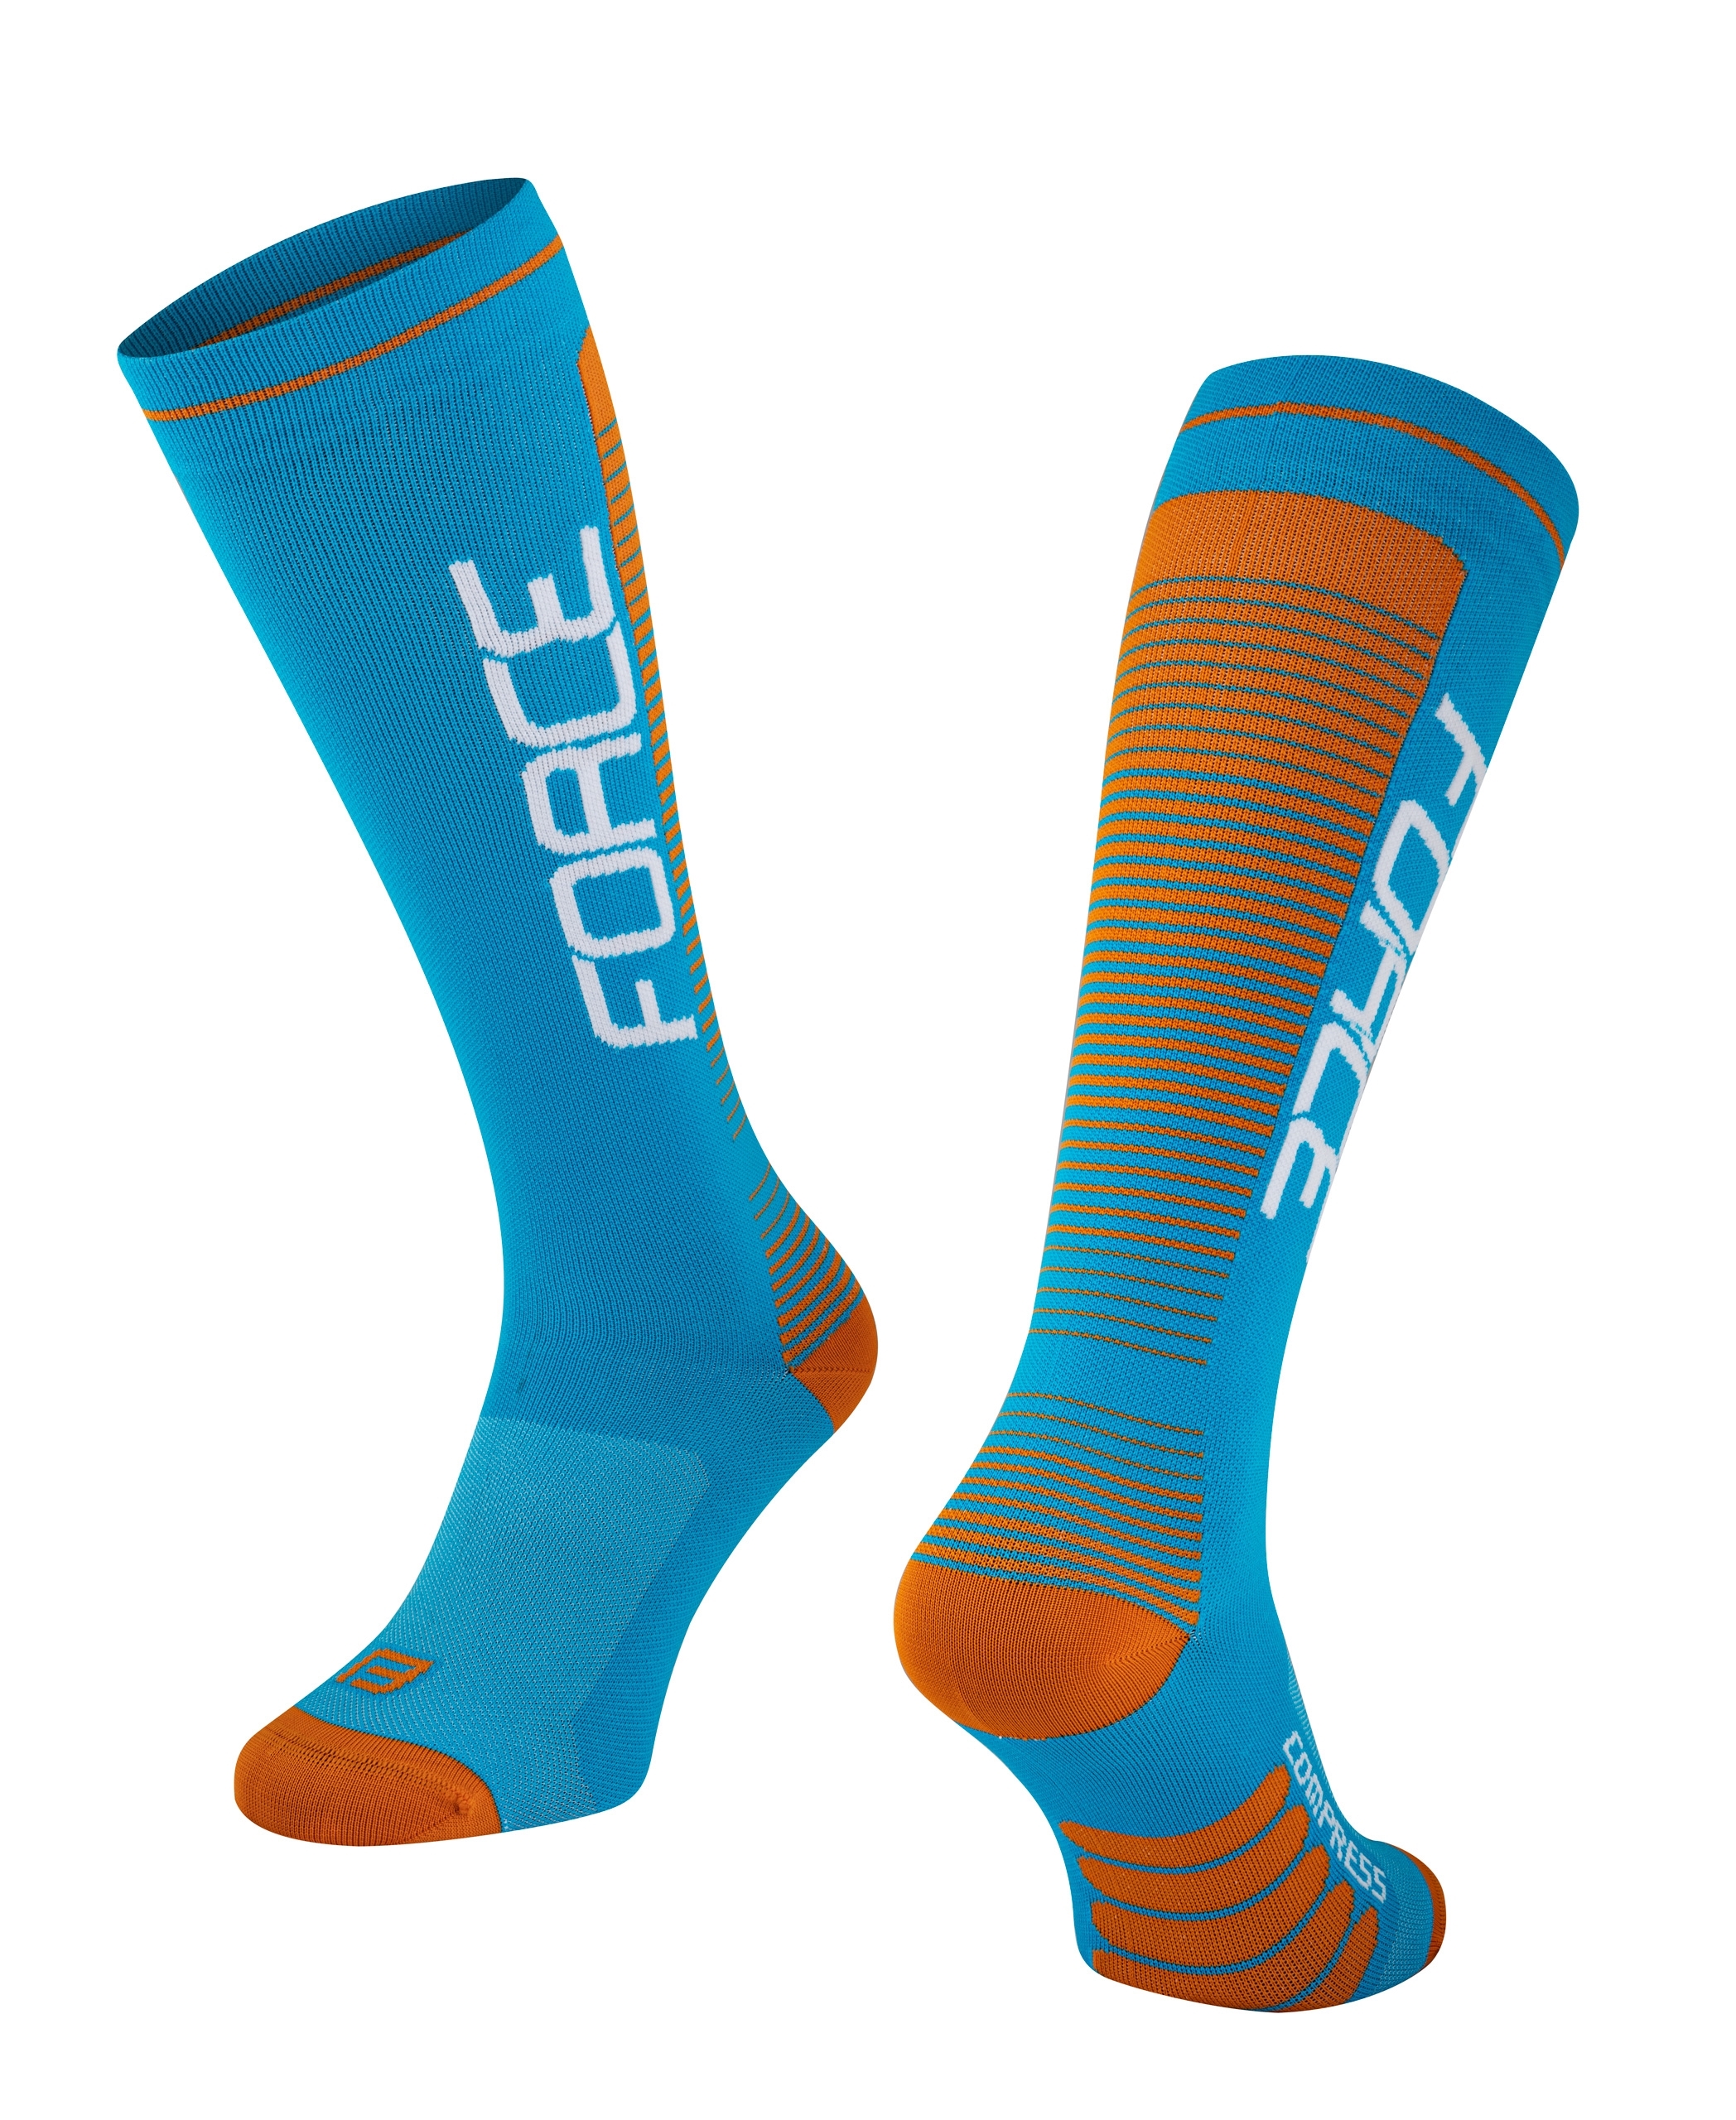 Kompresní ponožky FORCE Compress modro-oranžové S-M/36-41